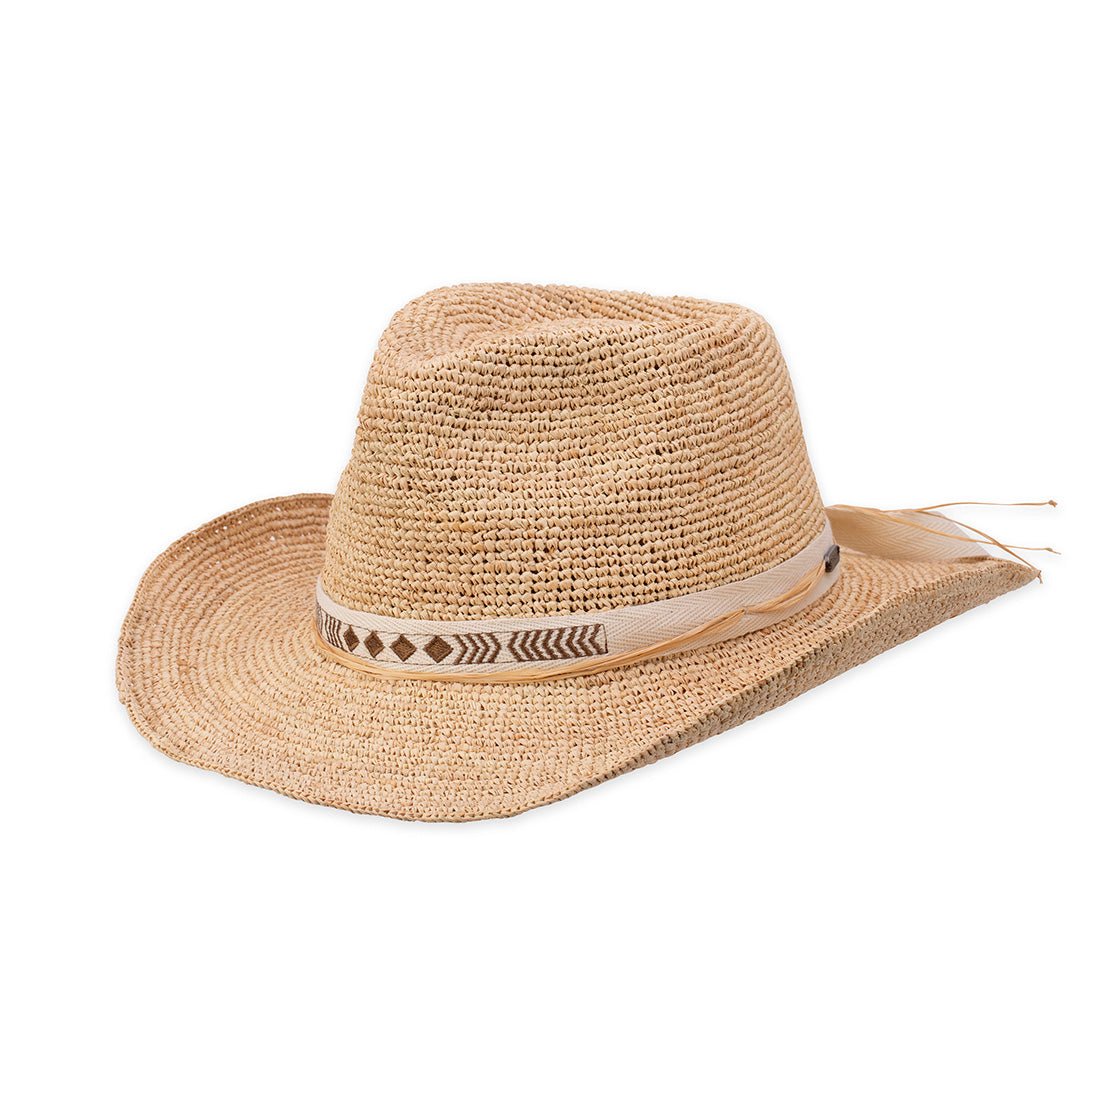 Men's Elegant Summer Hats Super Sale up to −60%